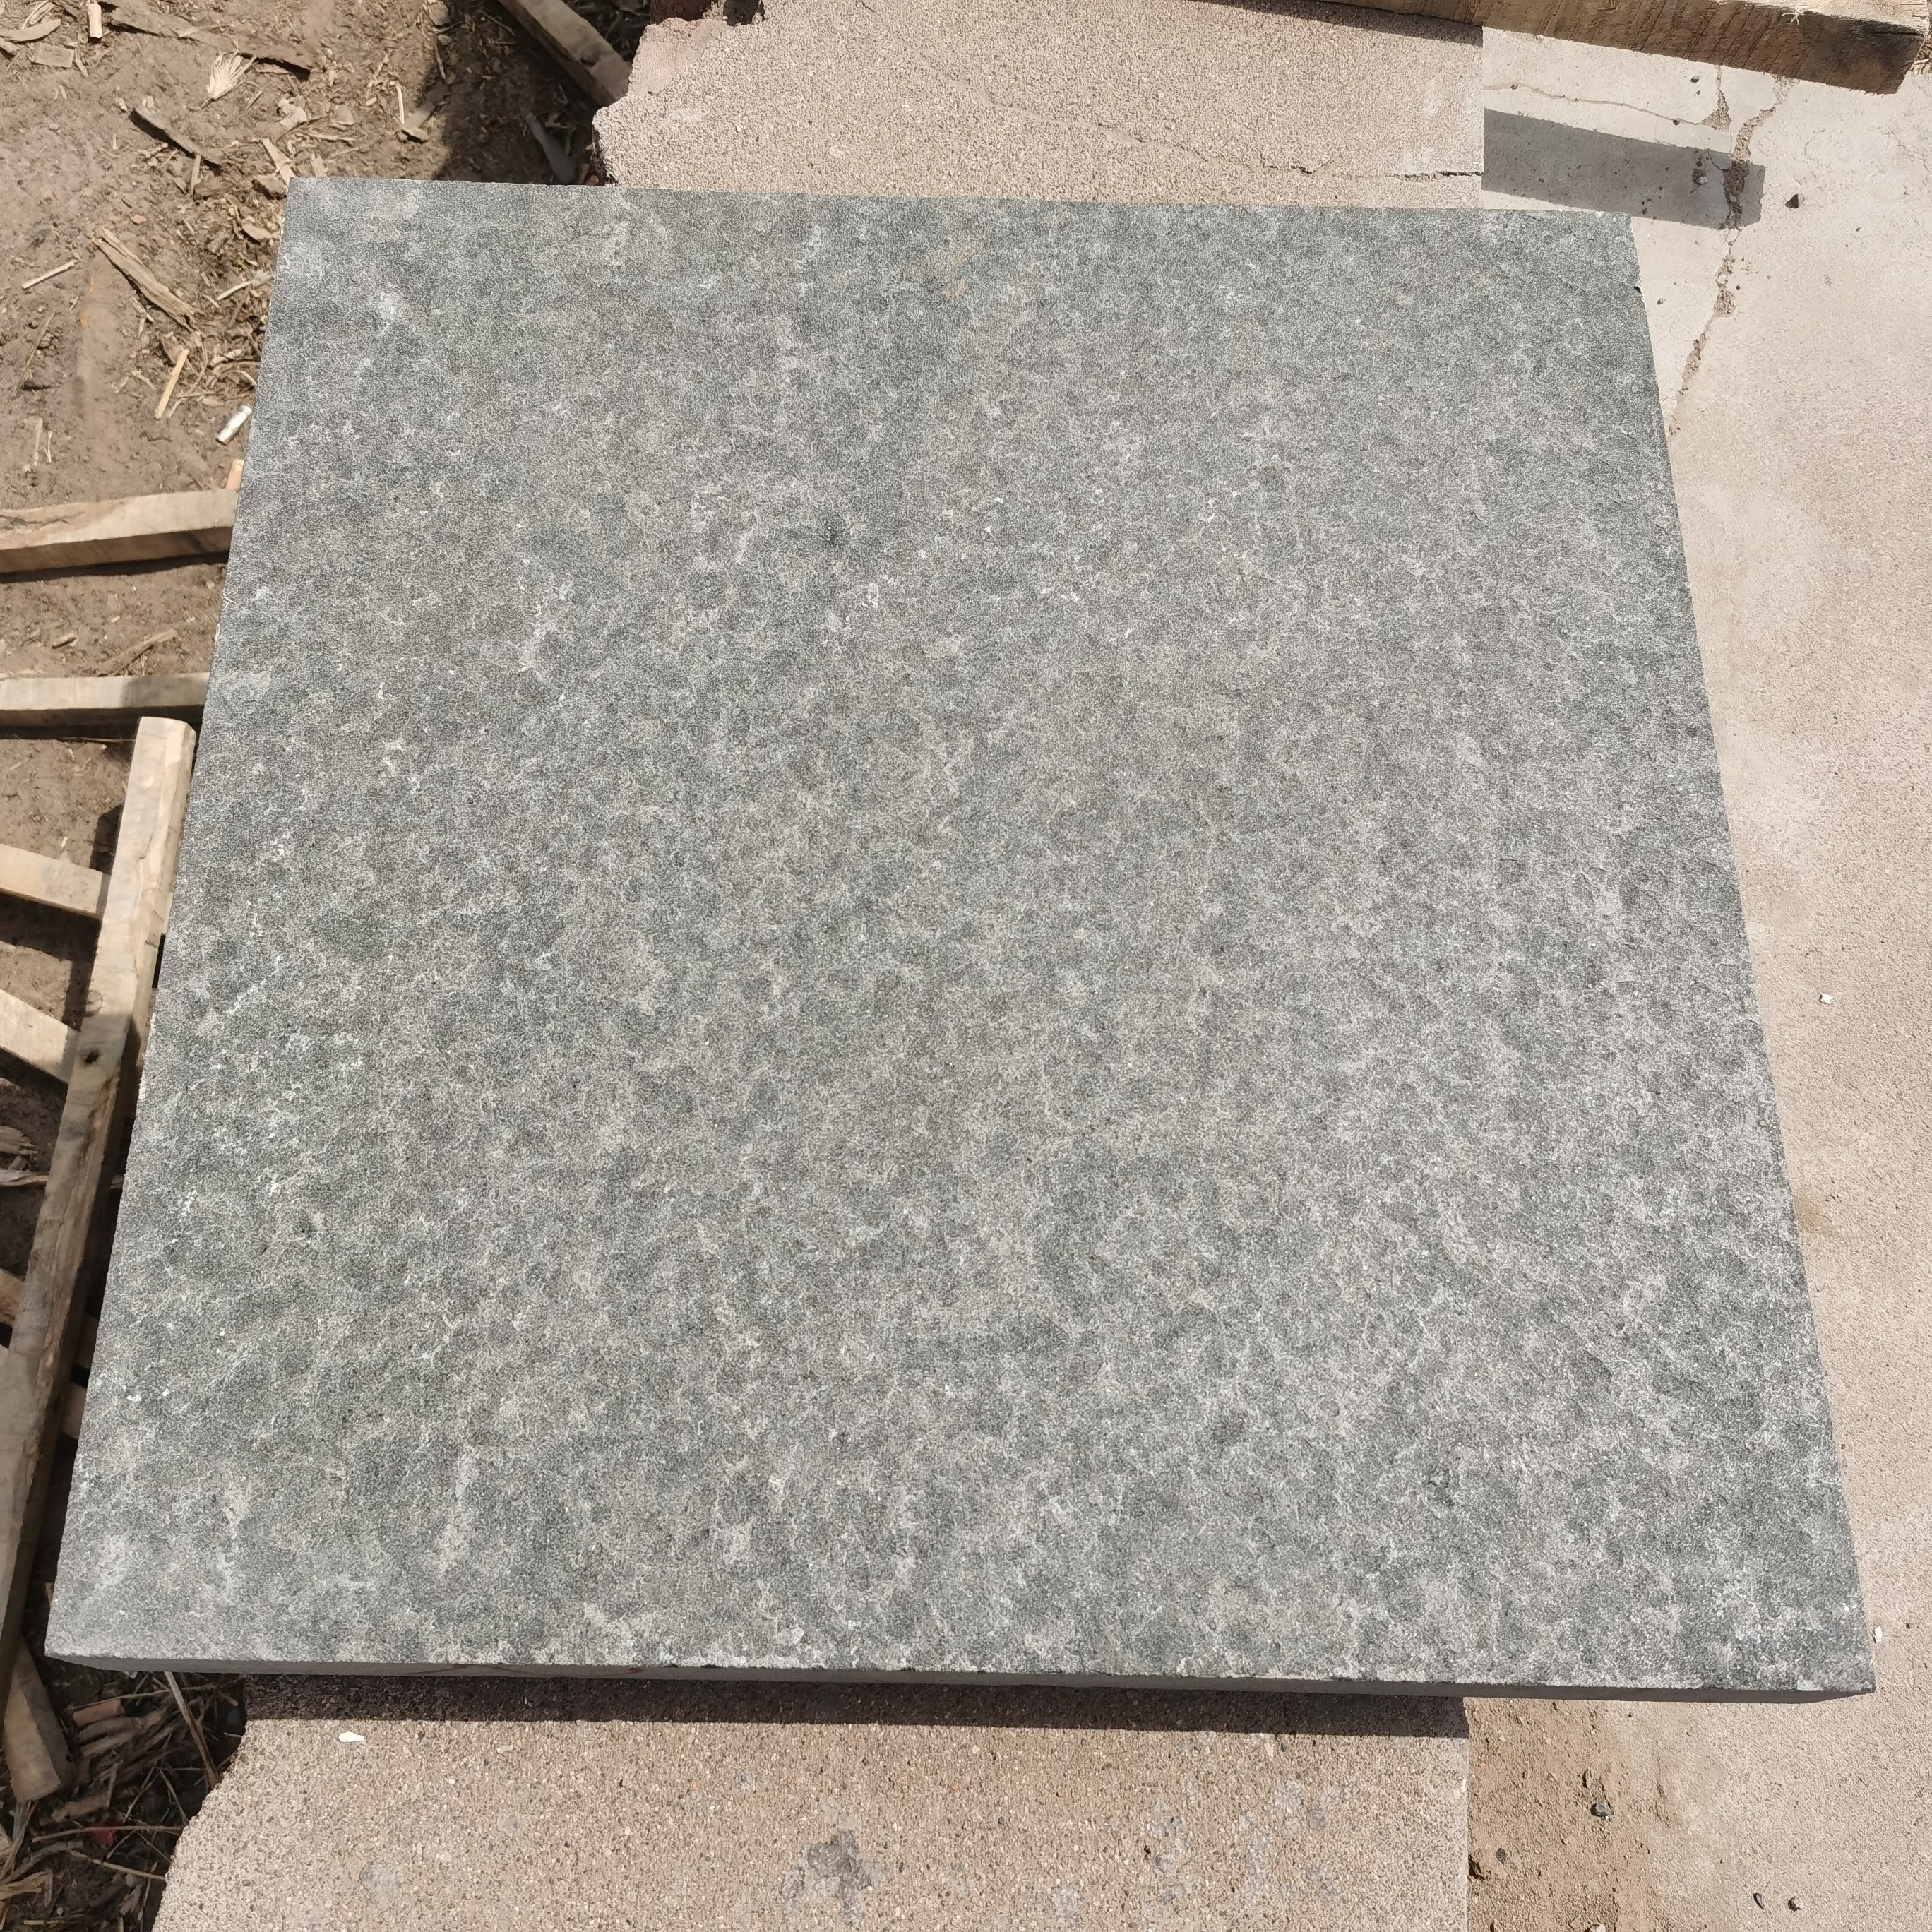 Honed Absolute Black Basalt Stone Floor Tiles